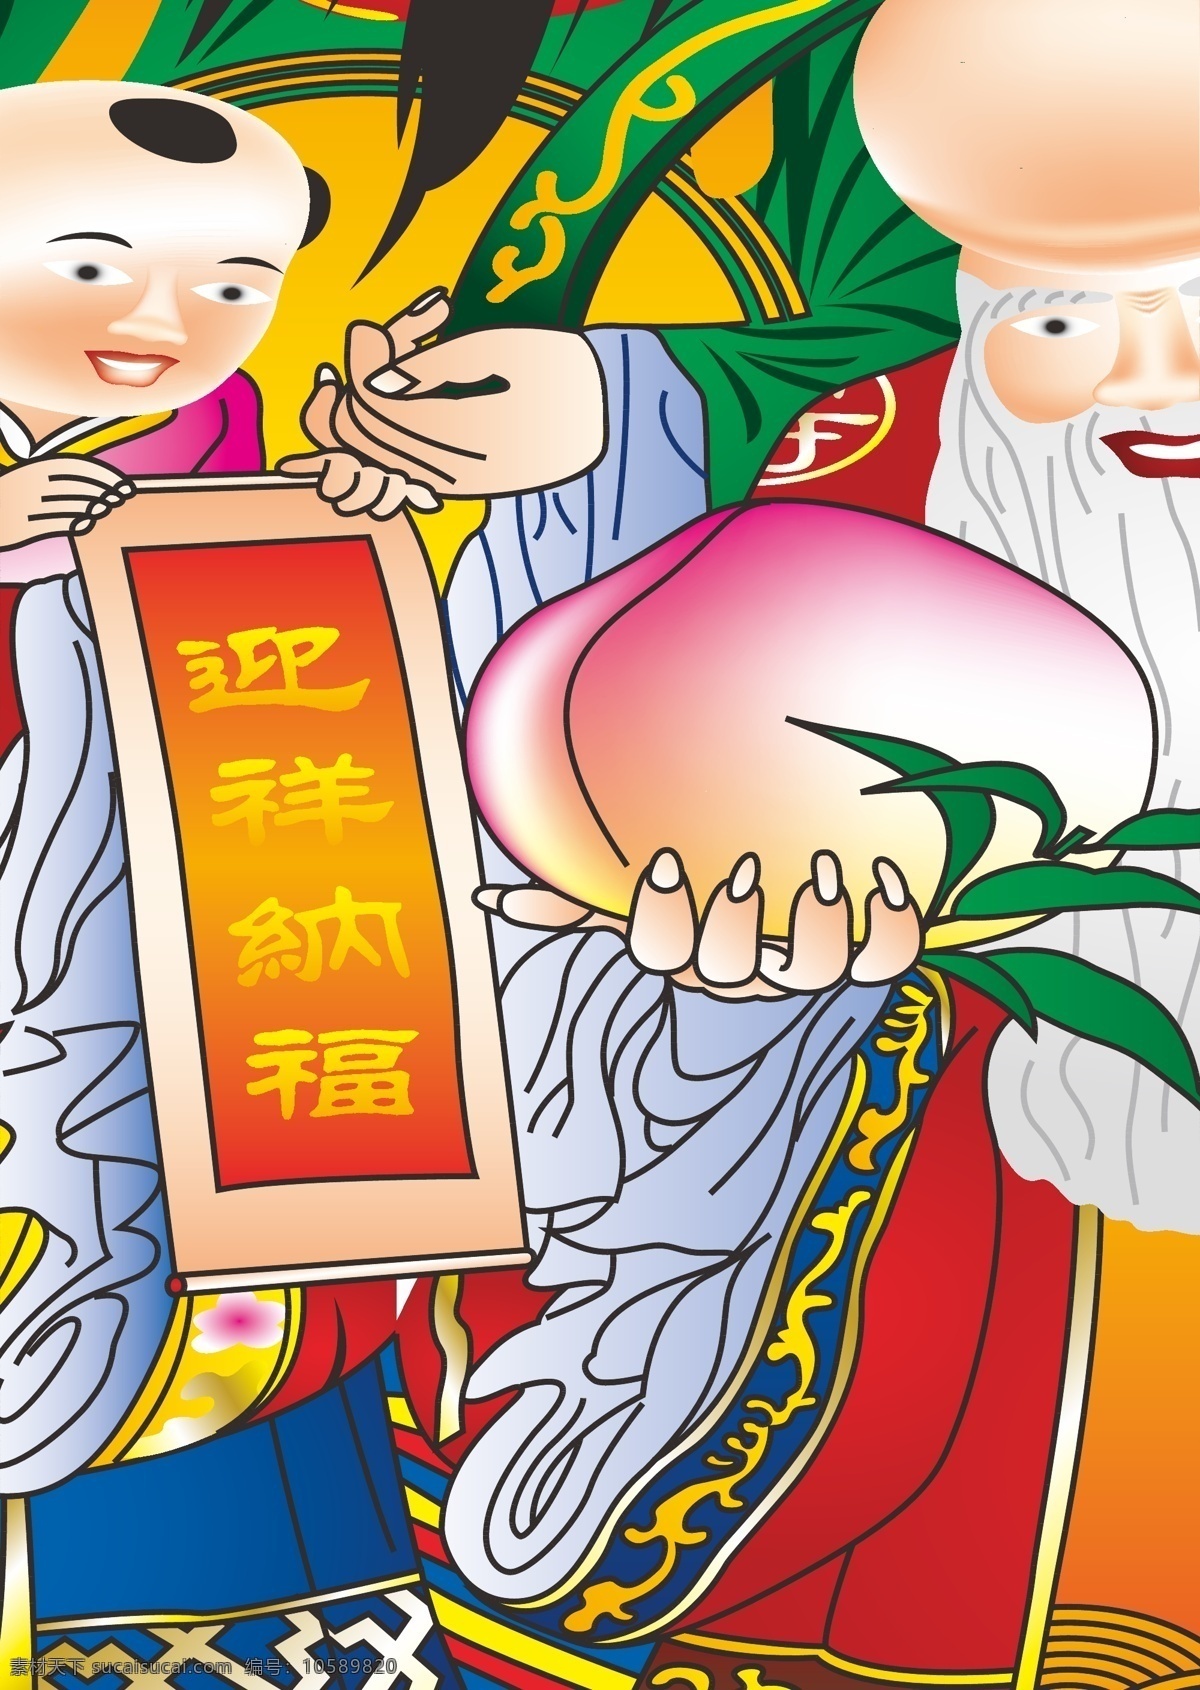 寿星 寿辰 对联 春节 节日素材 矢量